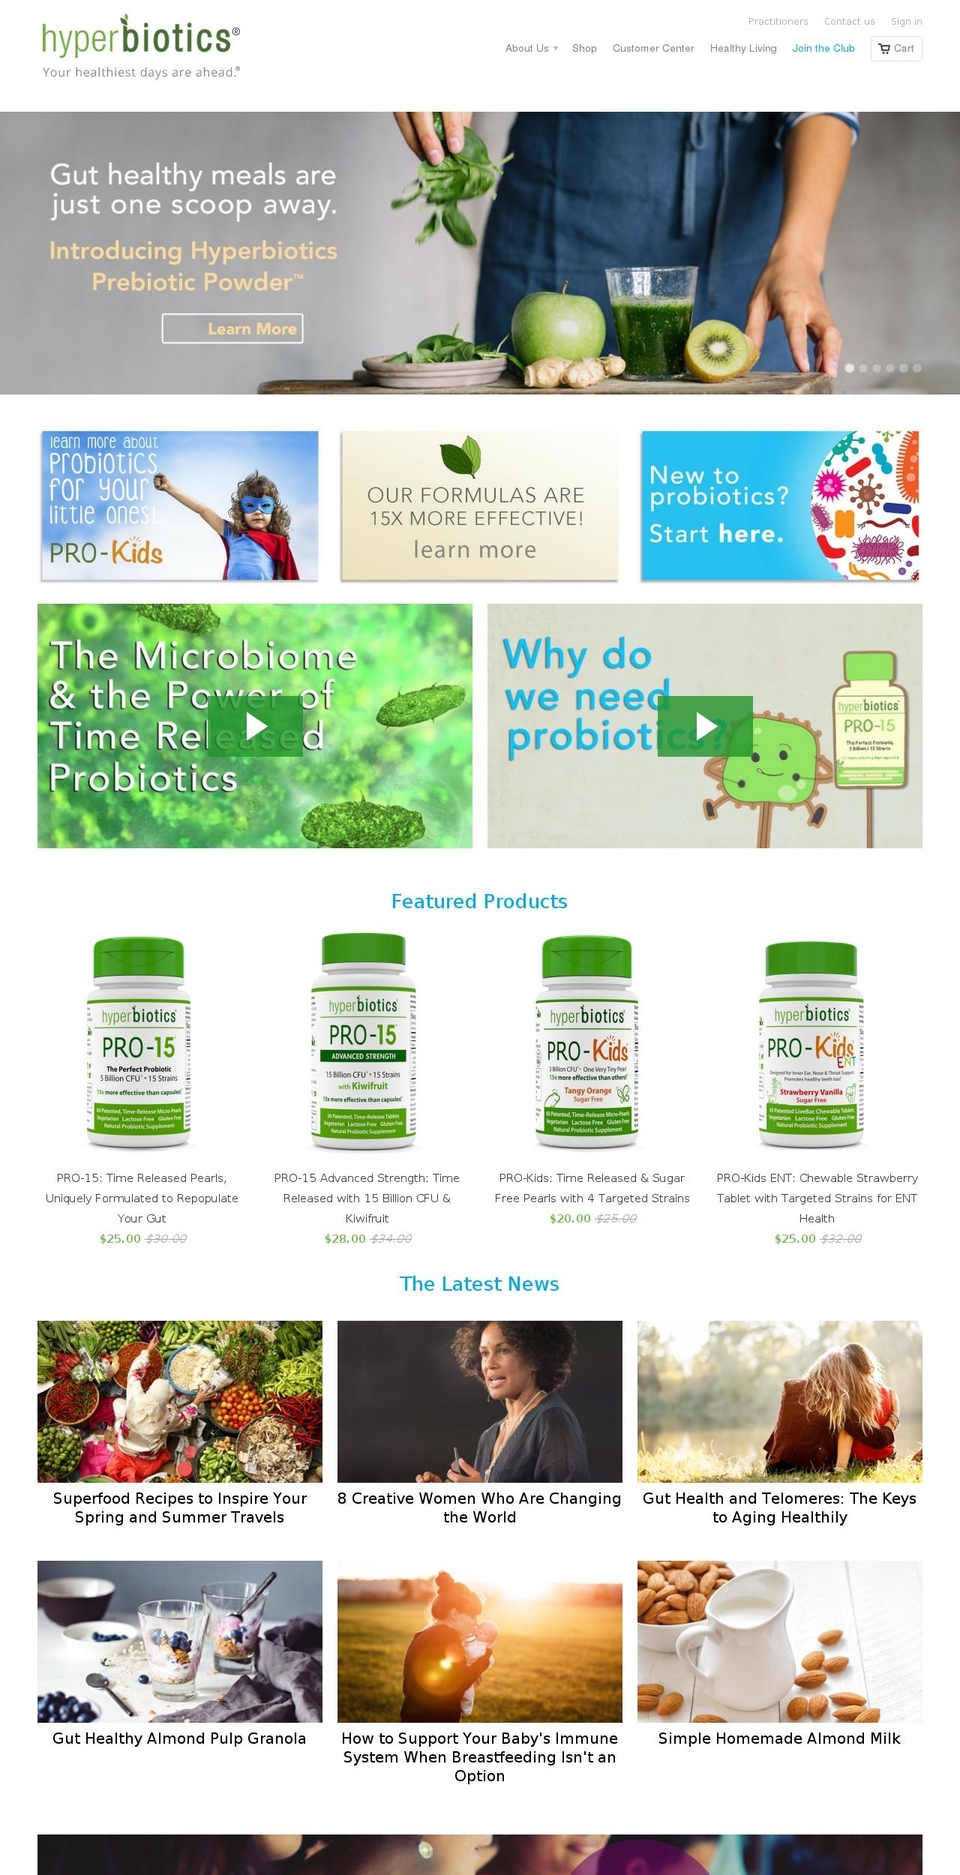 Dawn Shopify theme site example hyperbiotics.com